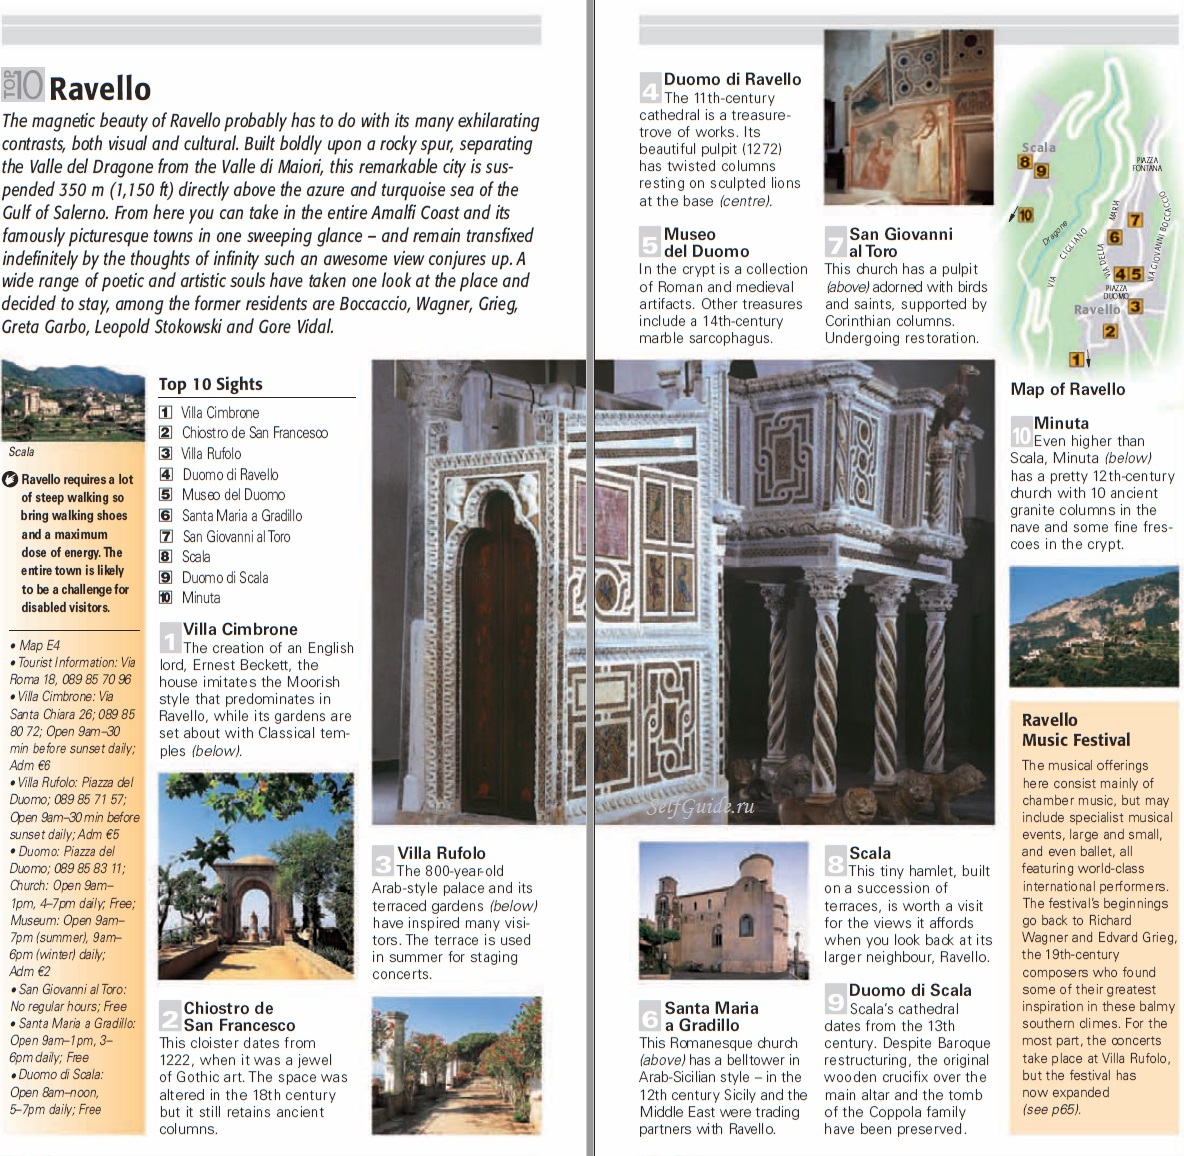 Равелло, побережье Амальфи, Италия - достопримечательности, путеводитель по городу, туристическая карта